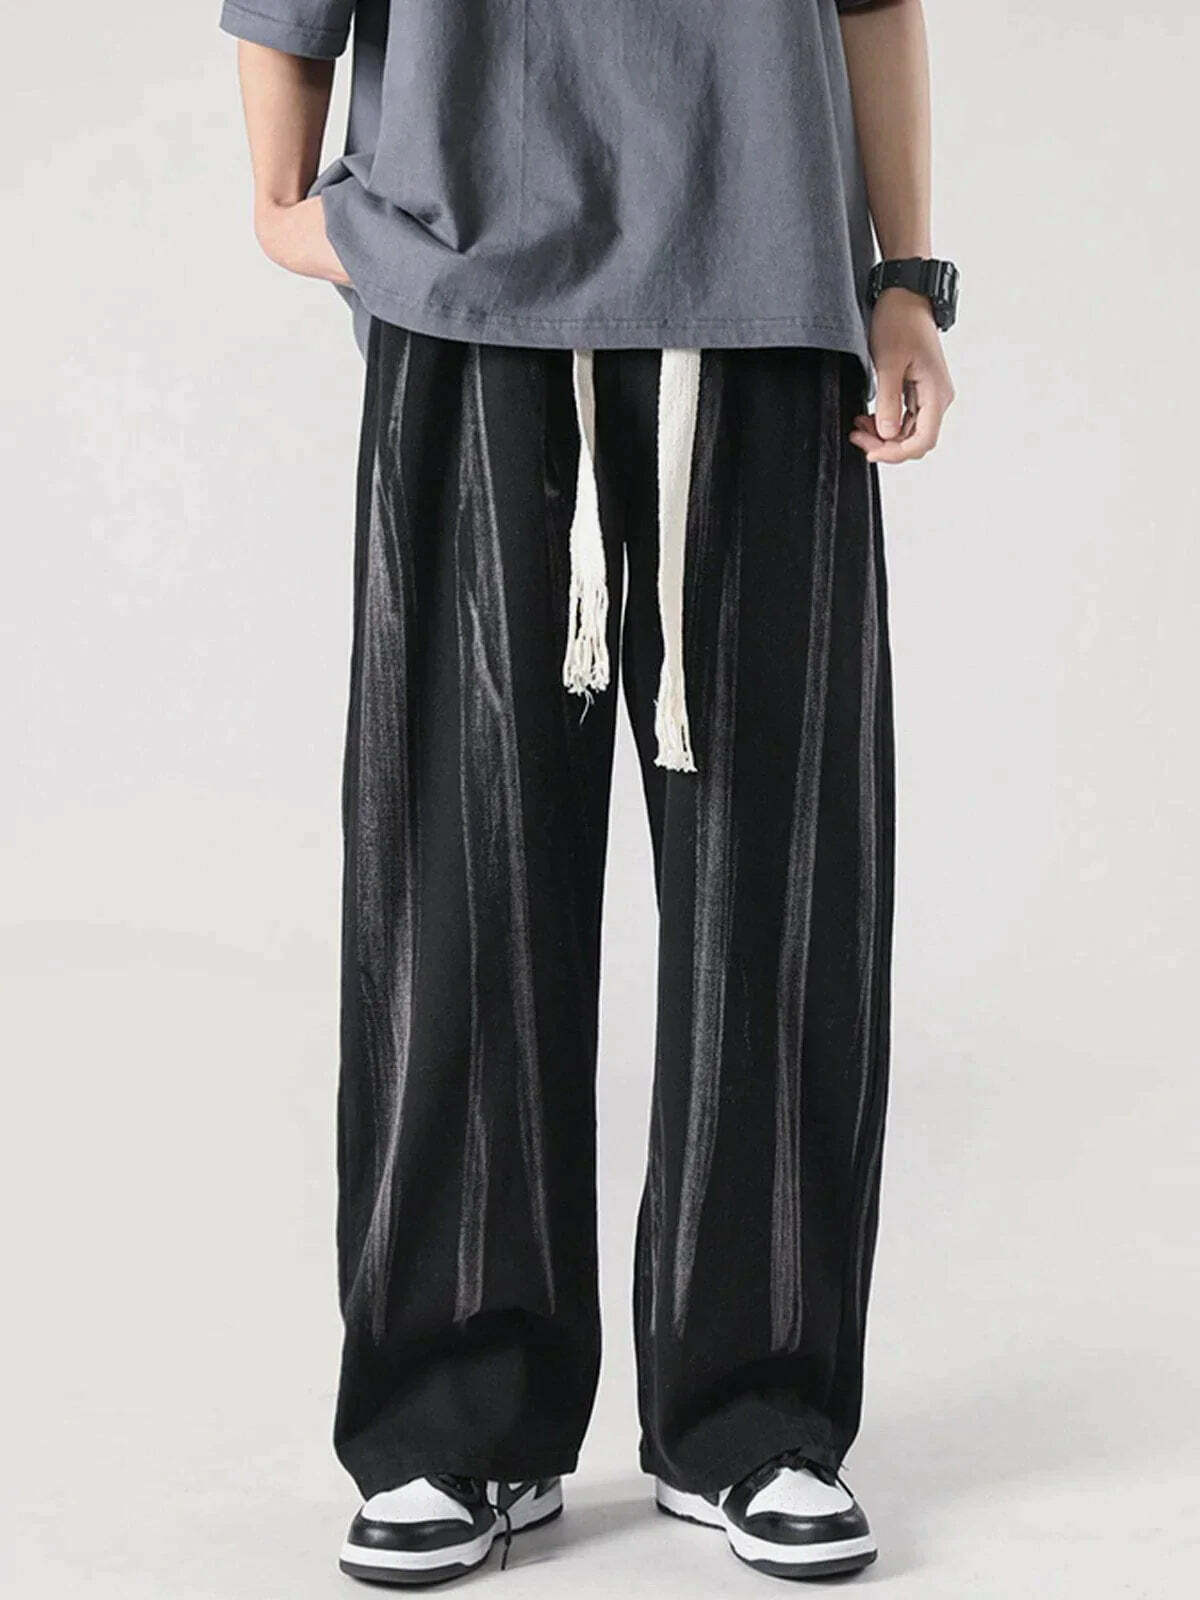 tiedye drawstring pants vibrant y2k fashion essential 5024